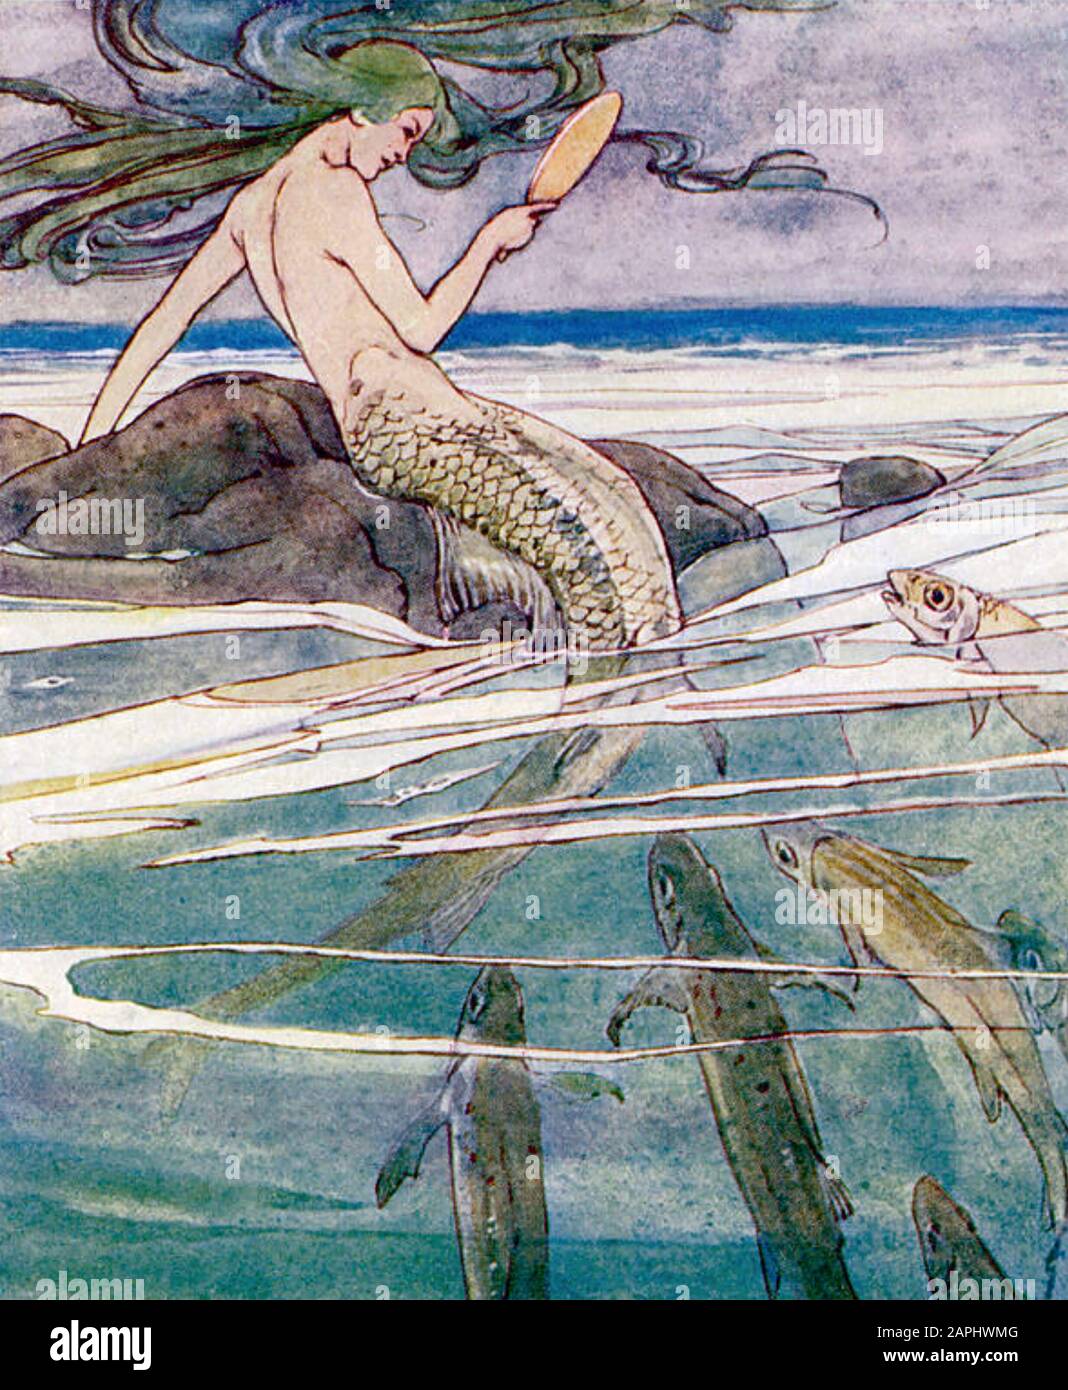 Mermaid AVEC POISSON dans une illustration de 1905, peut-être par Arthur Rackham Banque D'Images